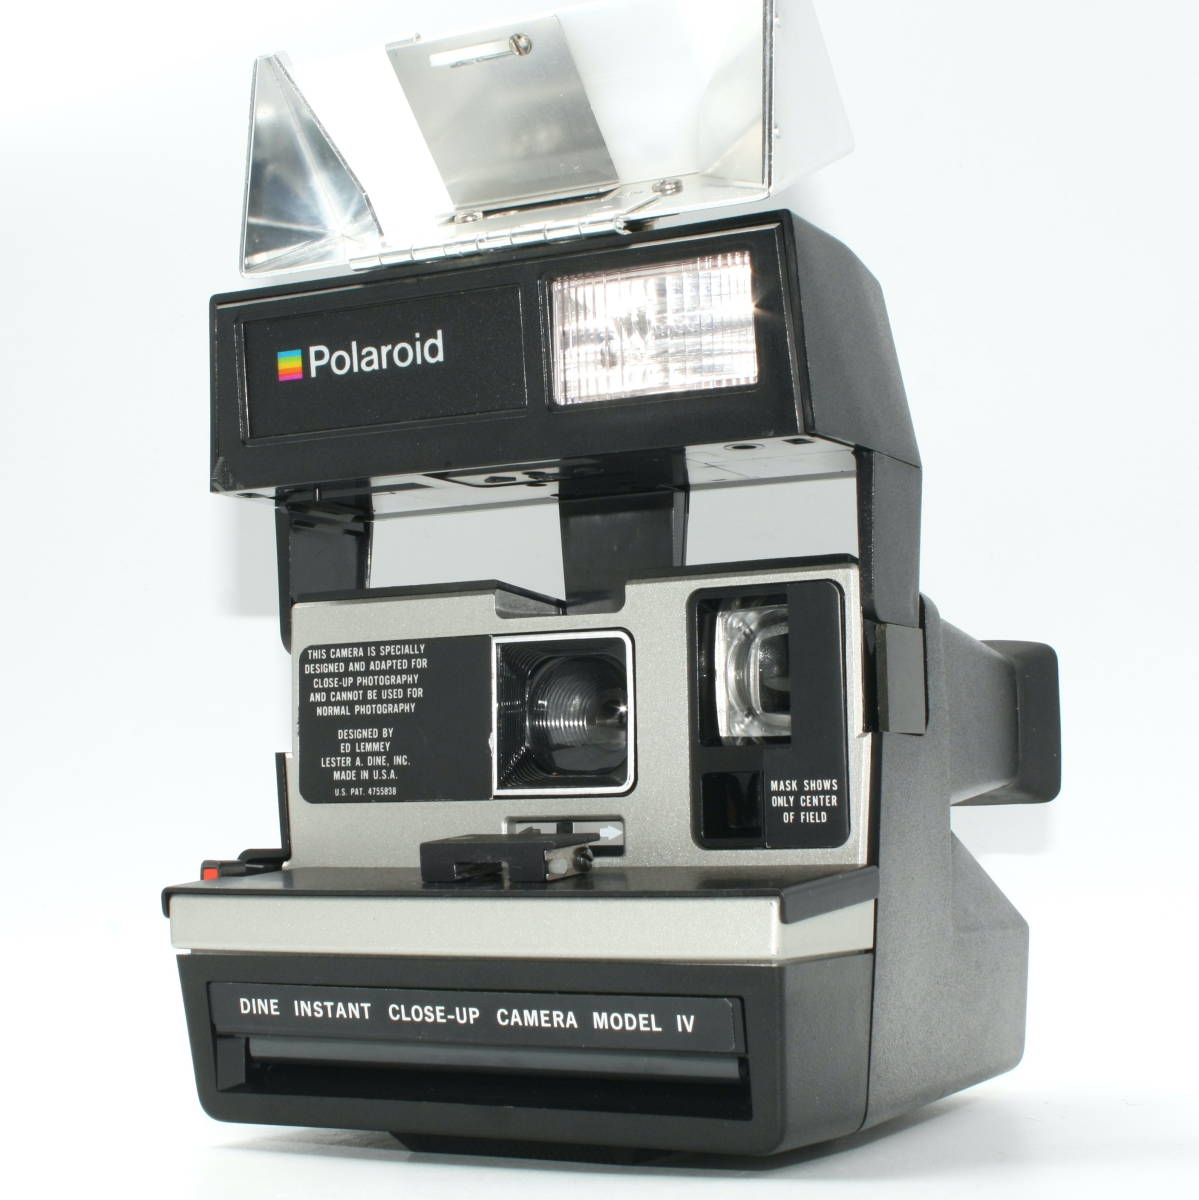 ☆超希少品!!☆ Polaroid 600-D DINE INSTANT CLOSE-UP CAMERA MODEL